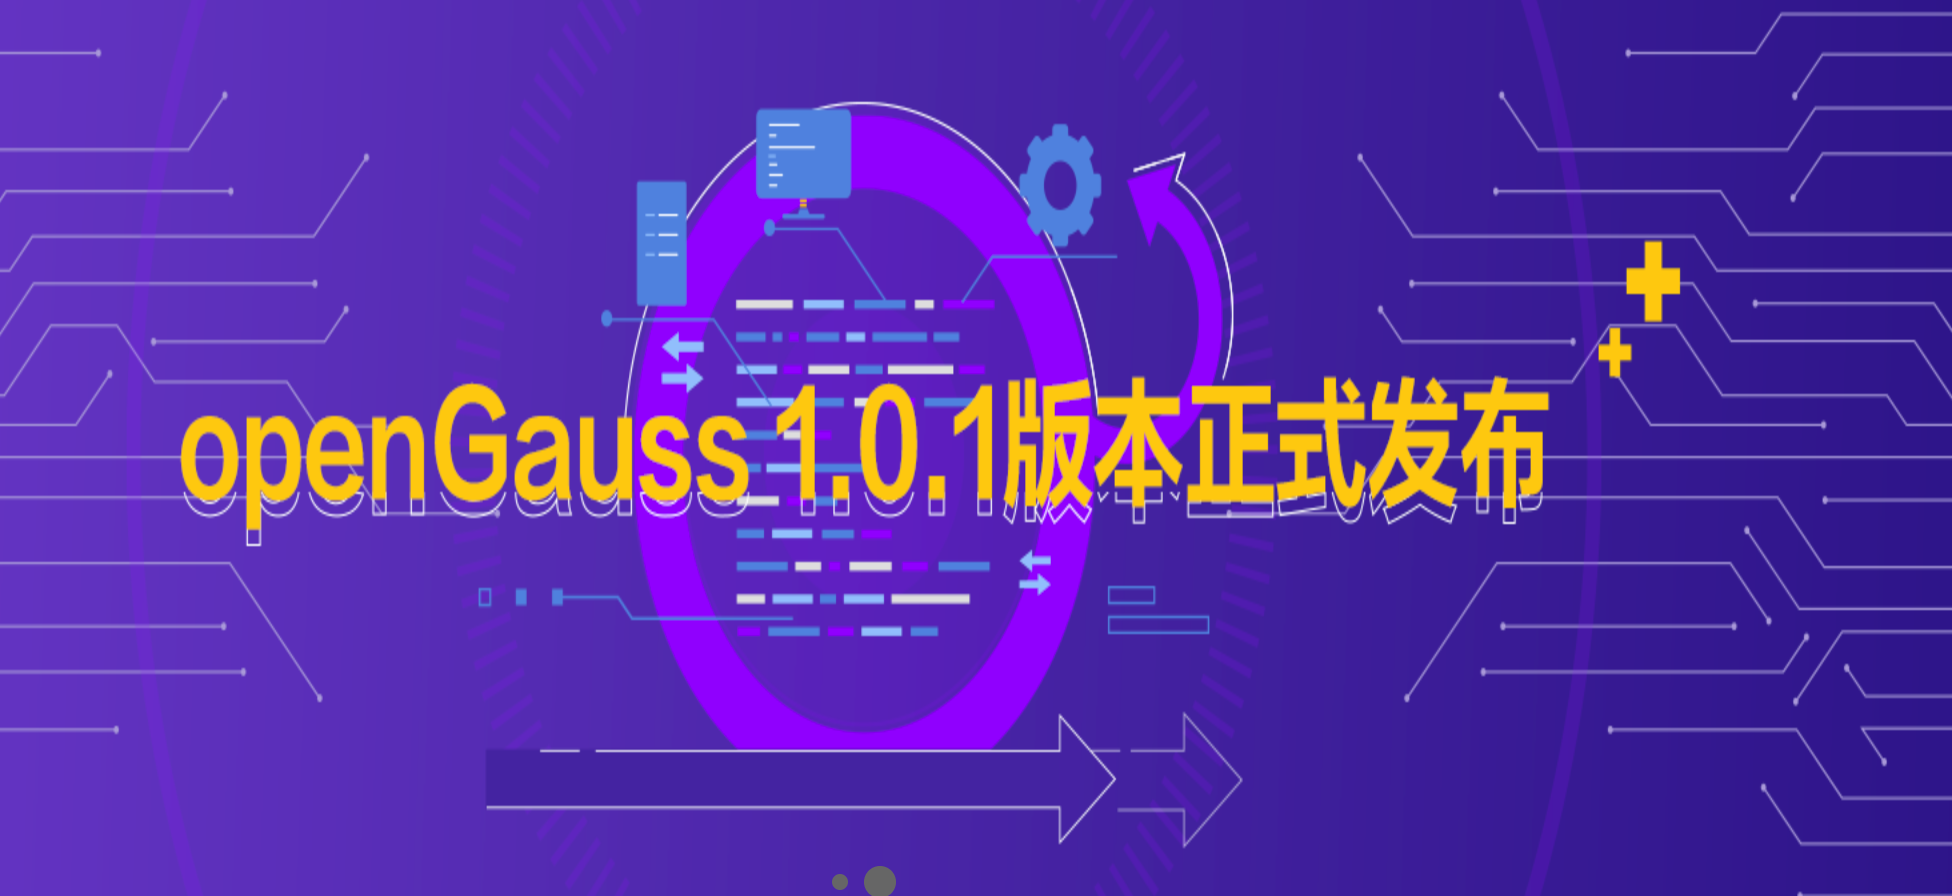 关系型数据库管理系统openGauss 1.0.1版本发布